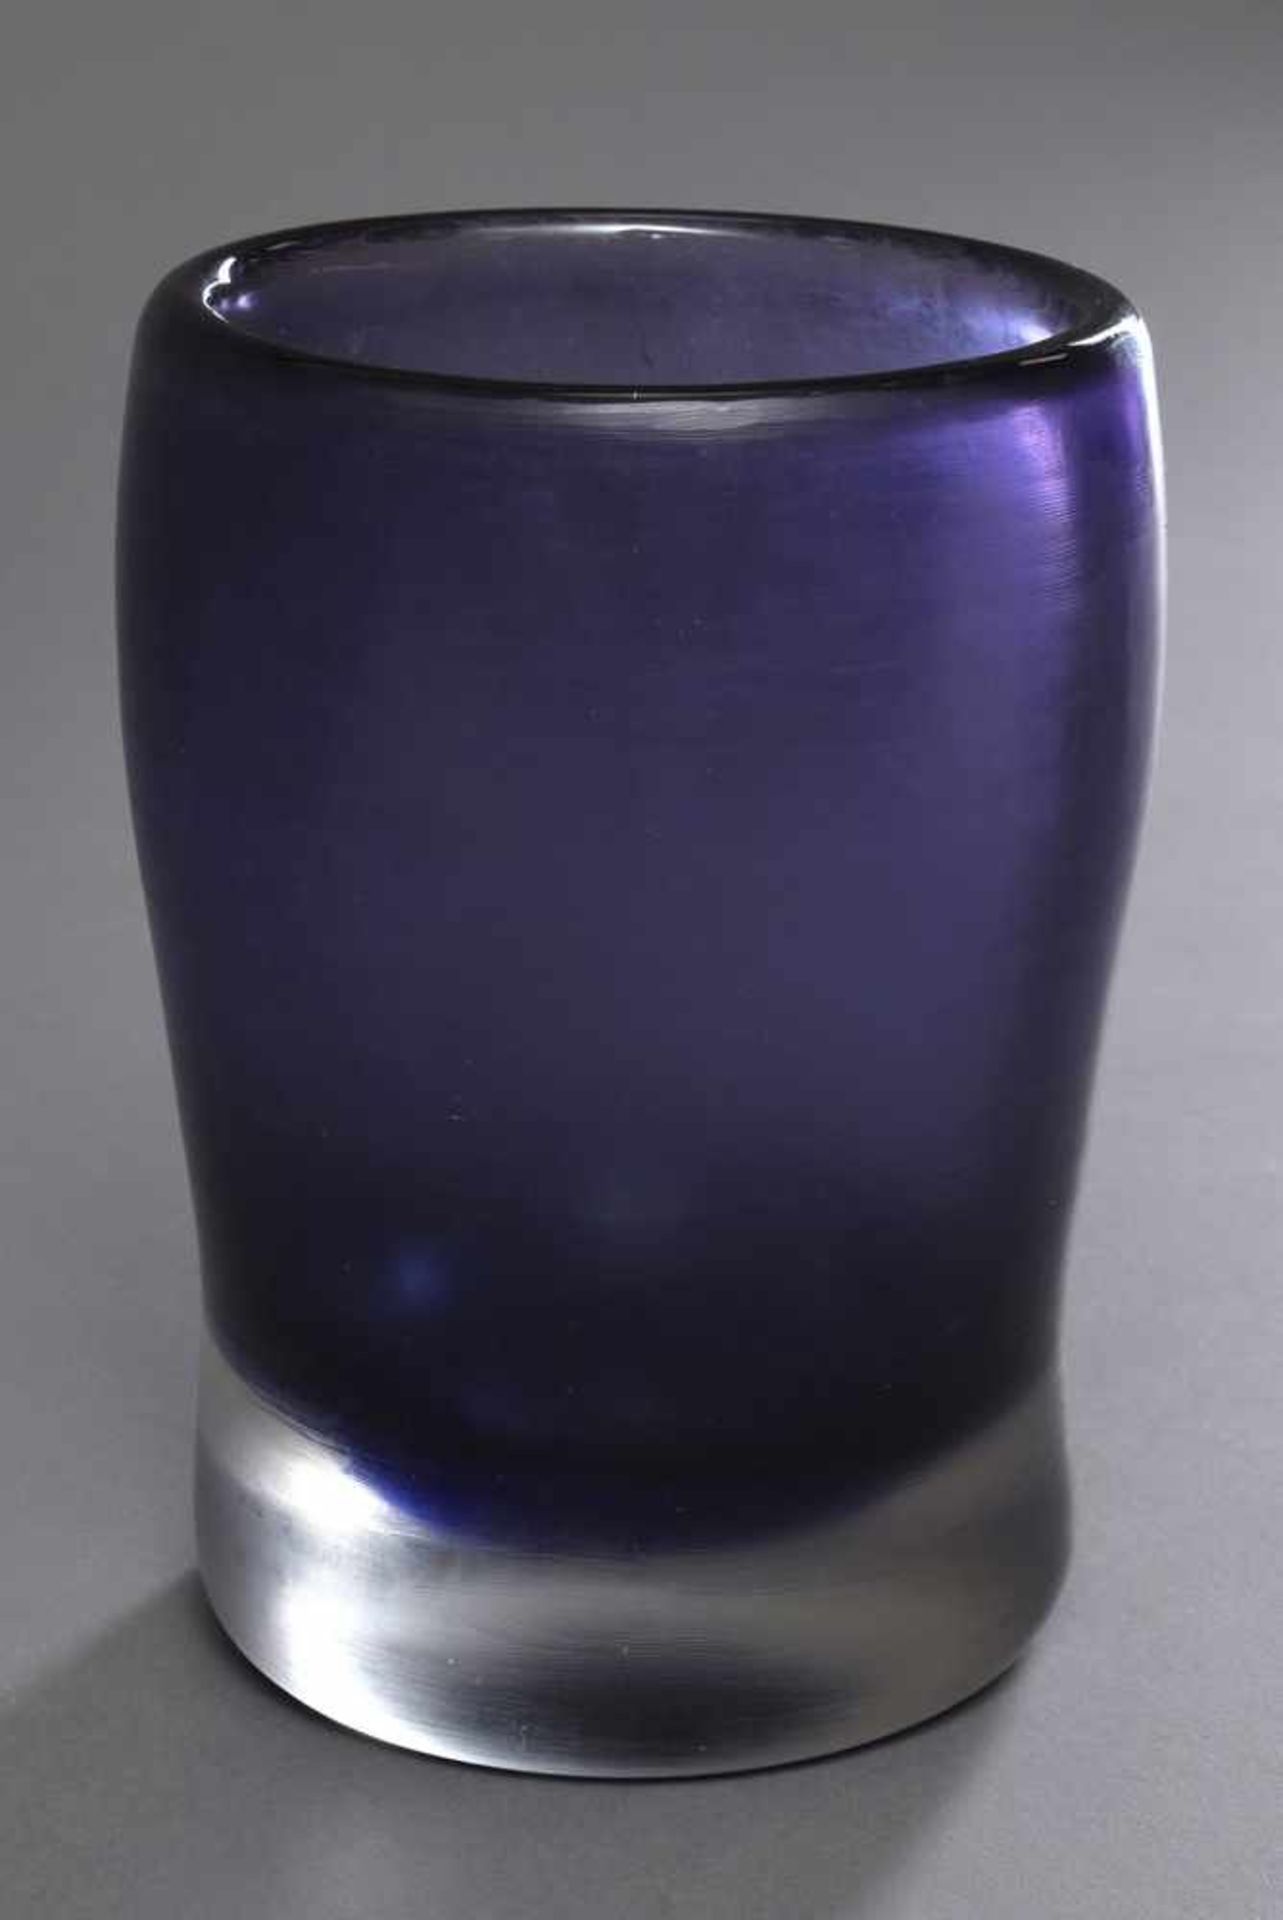 Violette Venini Vase "Inciso", 1950/60er Jahre, Boden mit Ätzsignatur, H. 19,5cm, am Boden leicht